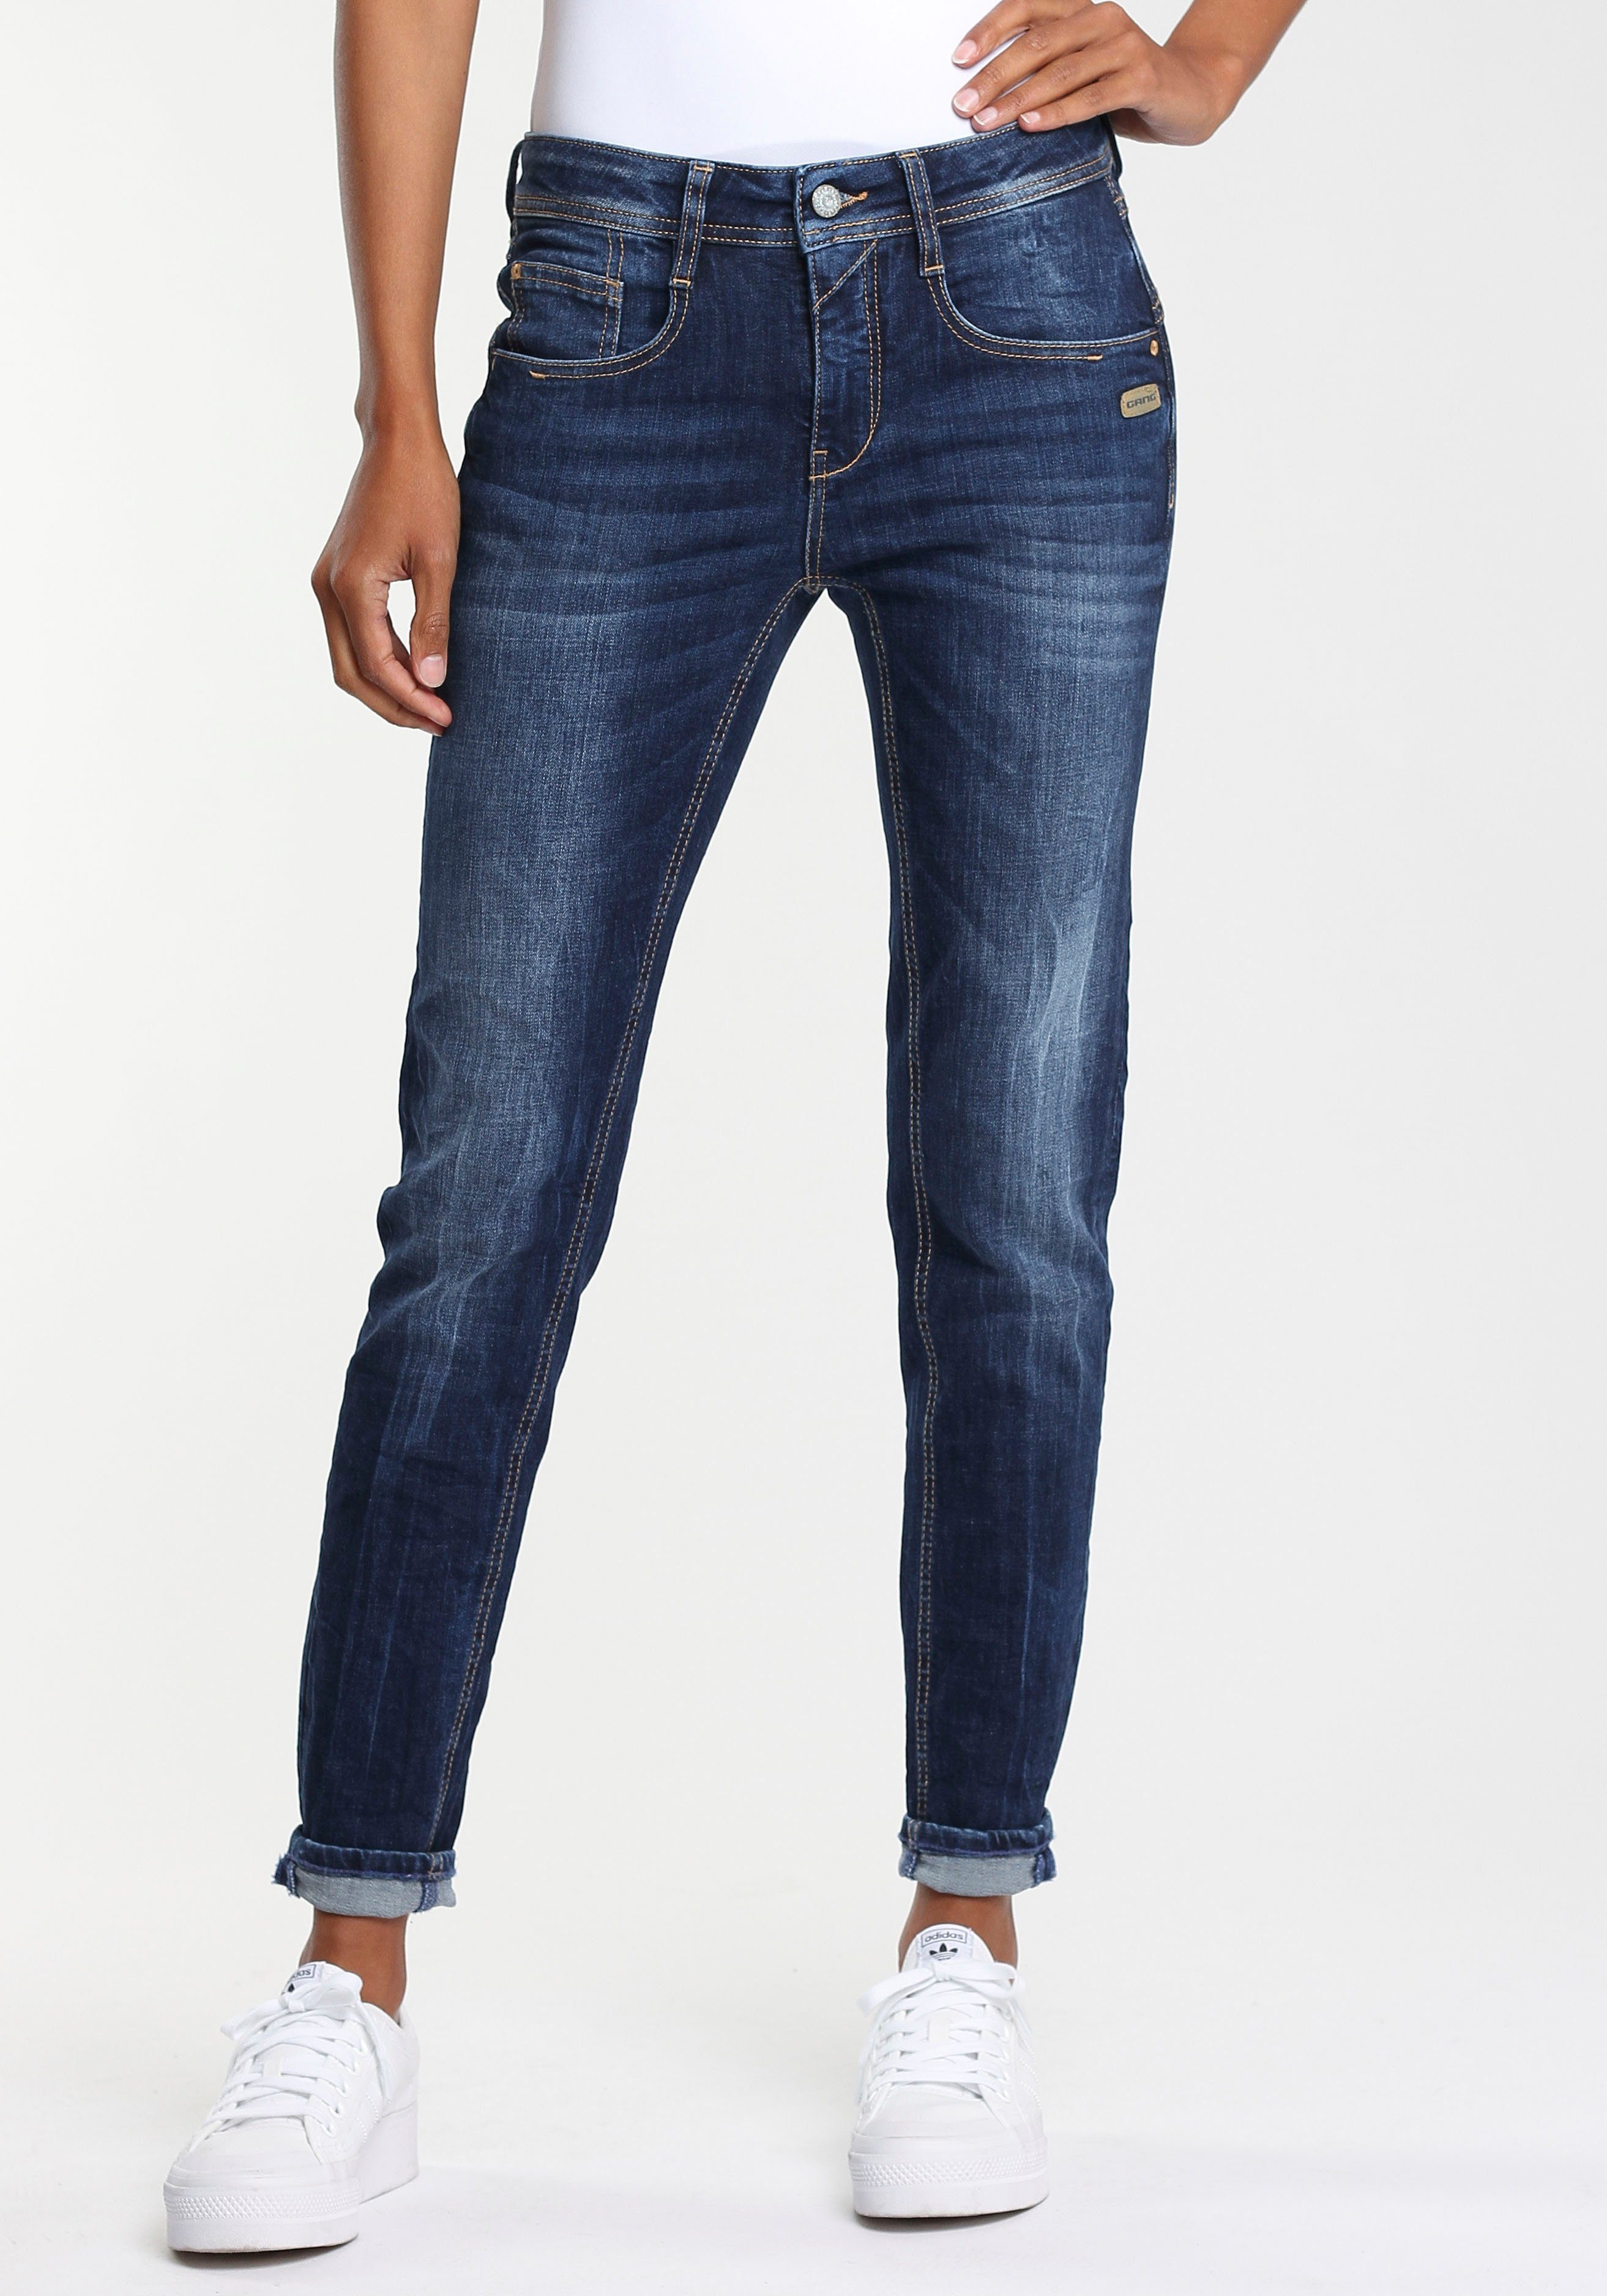 Jeans online kaufen » Jeanshosen | OTTO